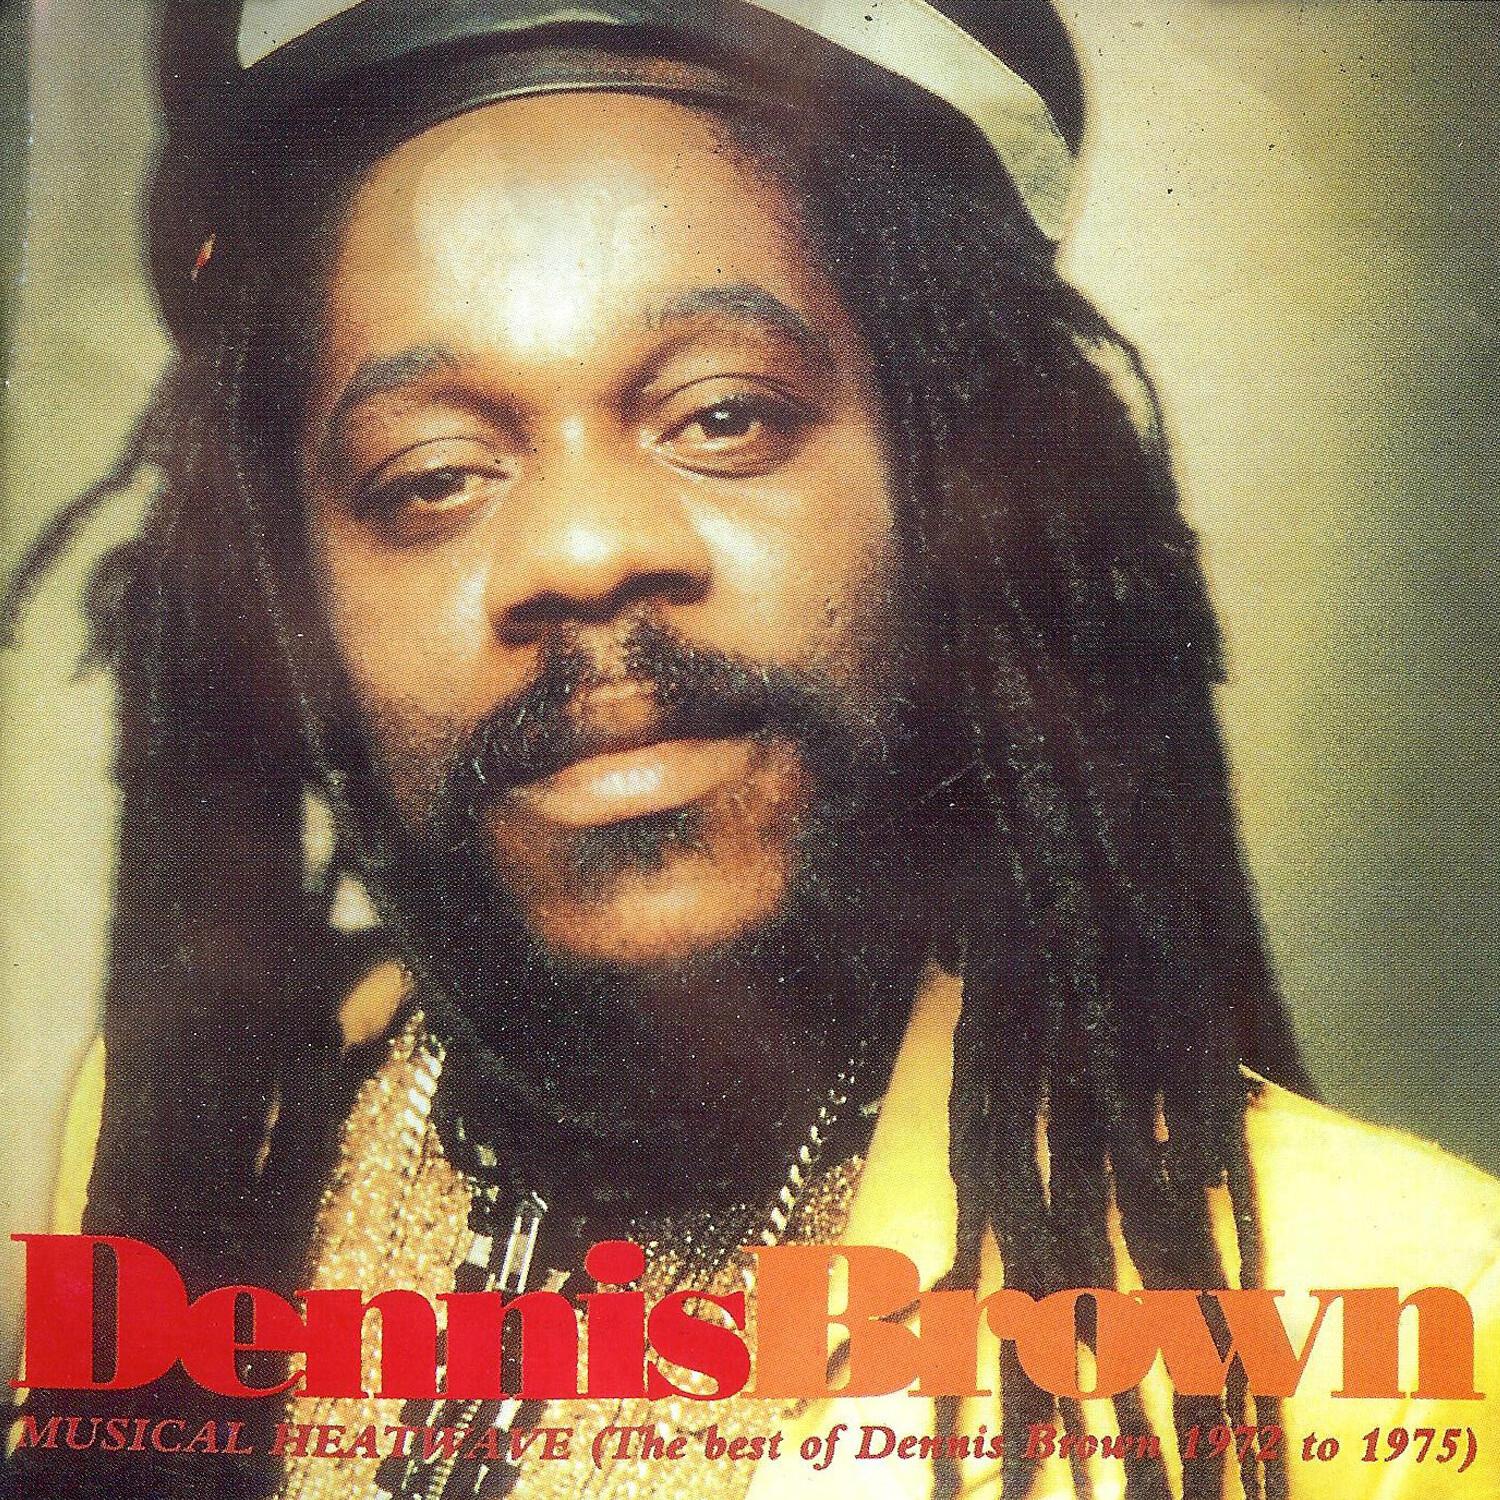 Musical Heatwave, The Best of Dennis Brown 1972-1975